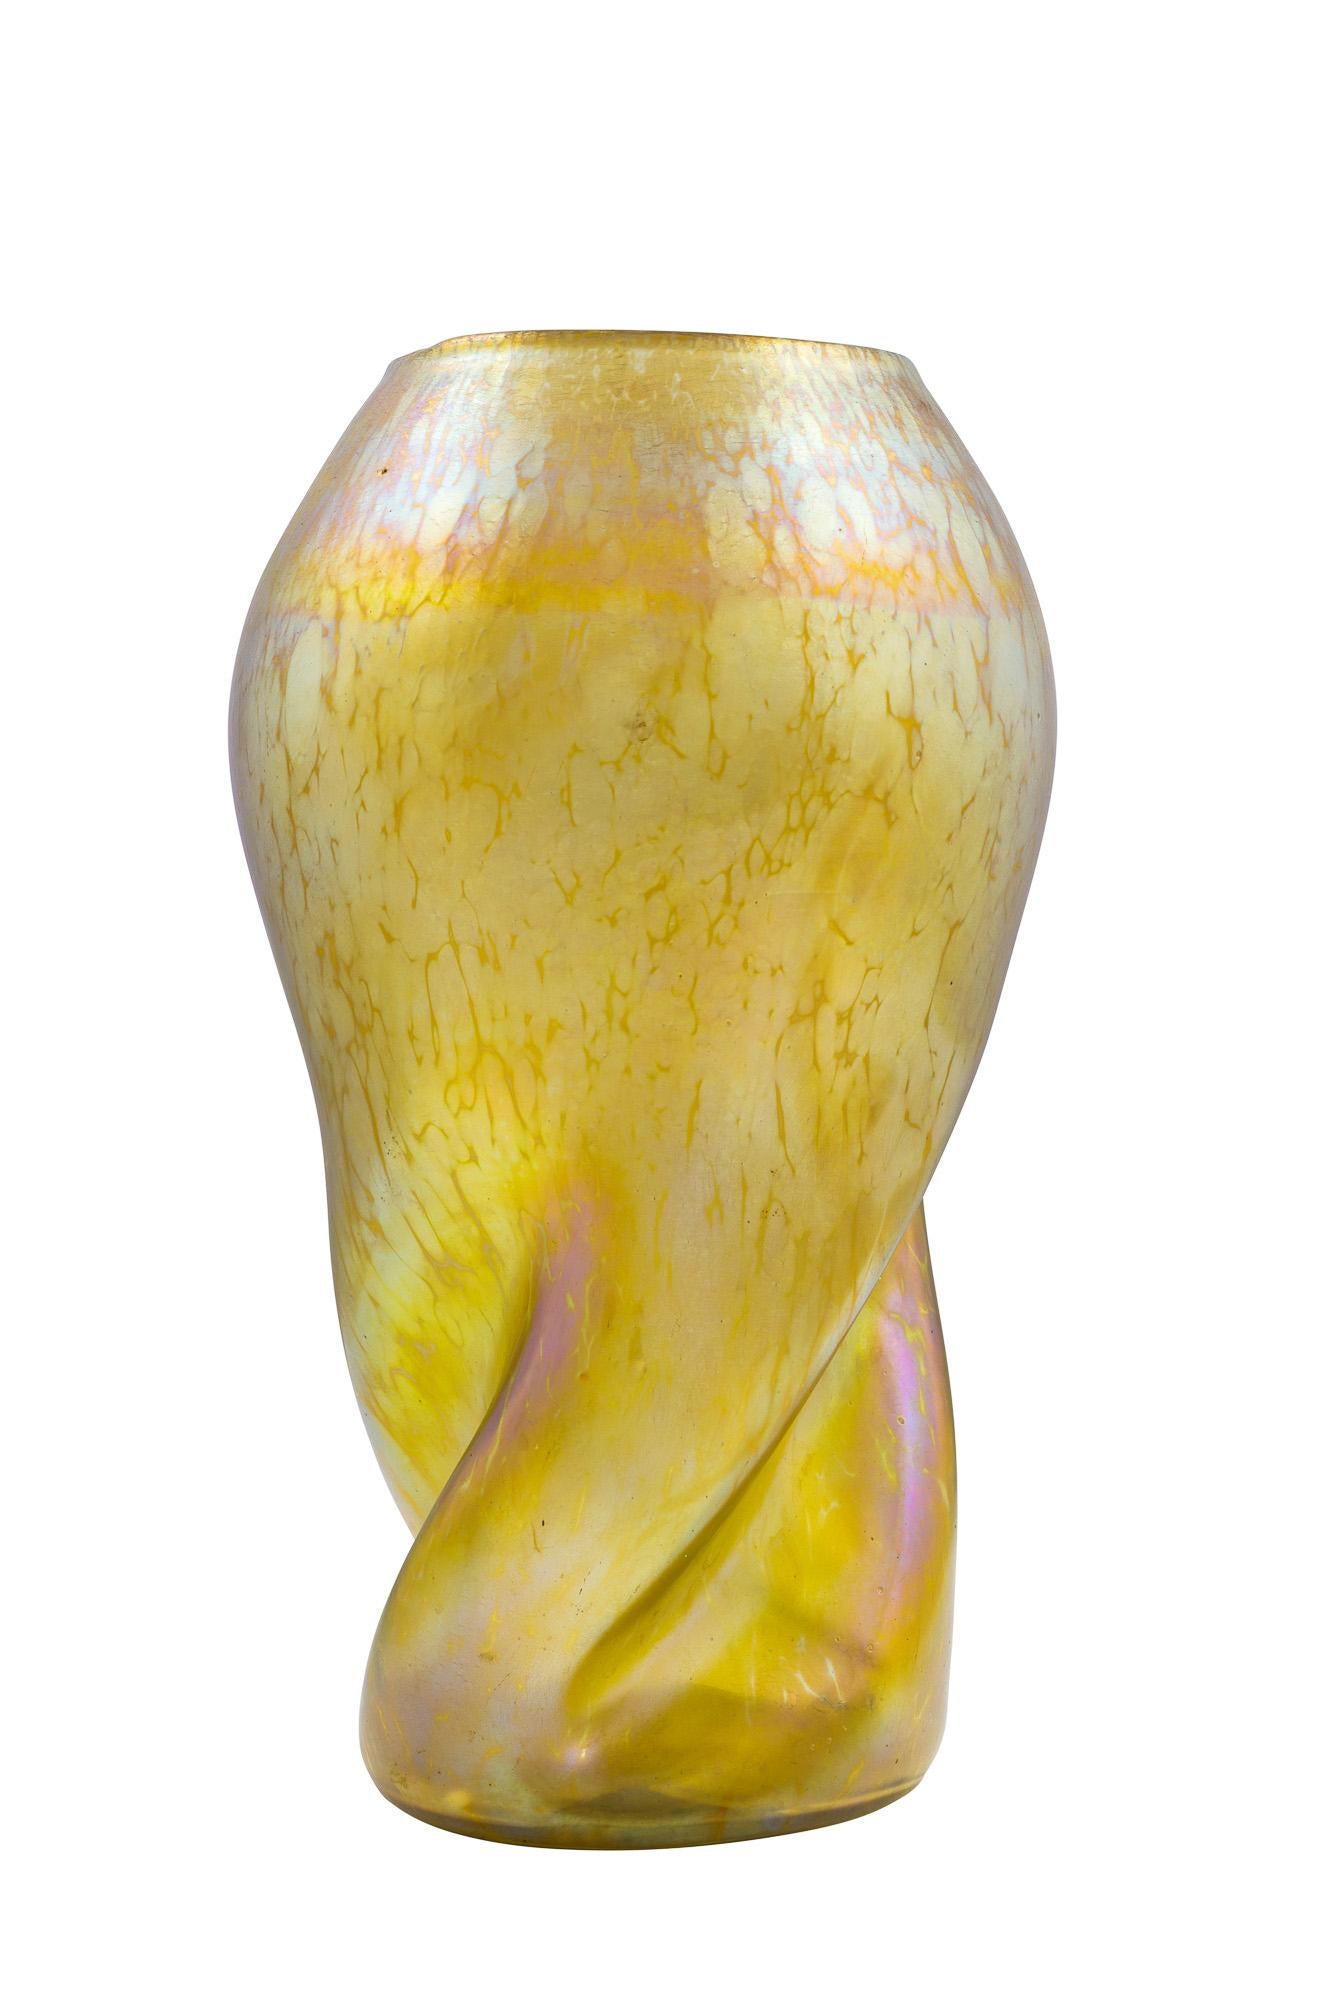 Art Deco Loetz Vase Canidia Papillon Twisted Neck circa 1900 Art Nouveau Glass